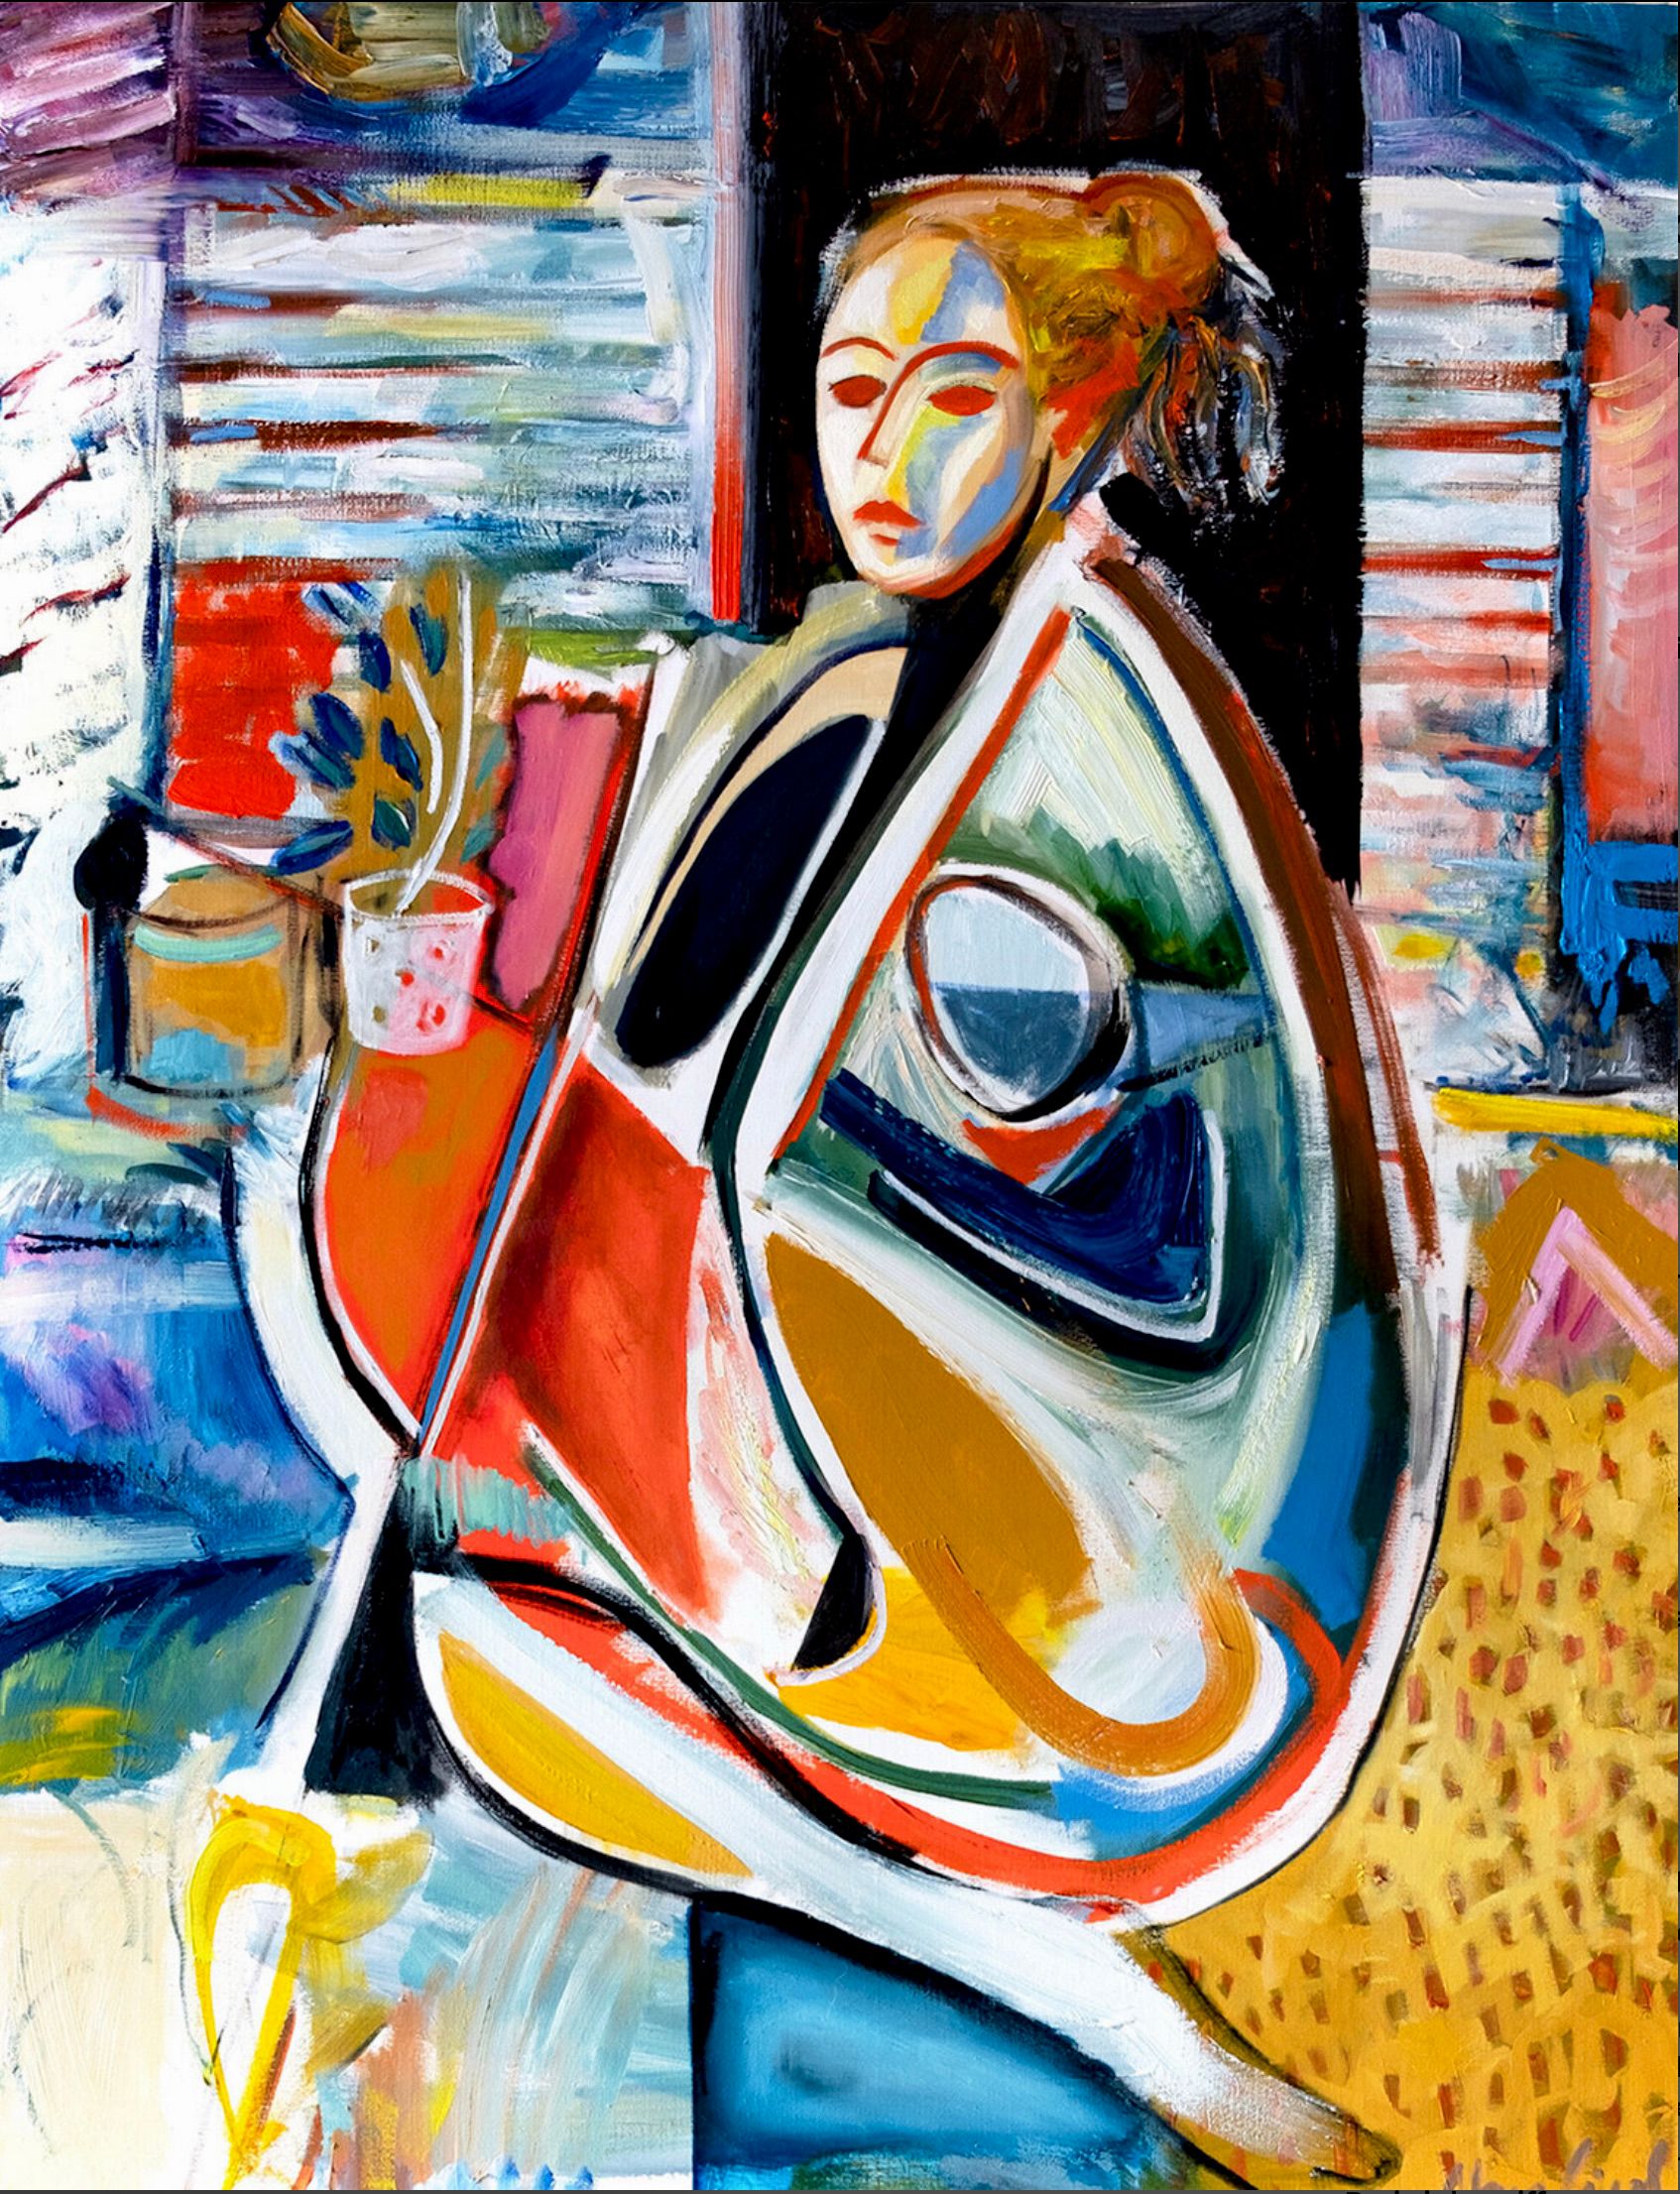 MECESLA Maciej Cieśla, "Mujer en formas abstractas, chica en estudio", Pintura abstracta de una chica en el fondo de objetos en el estudio artístico. Una joven modelo en formas geométricas y agresivas combinaciones de colores con acentos rojos.